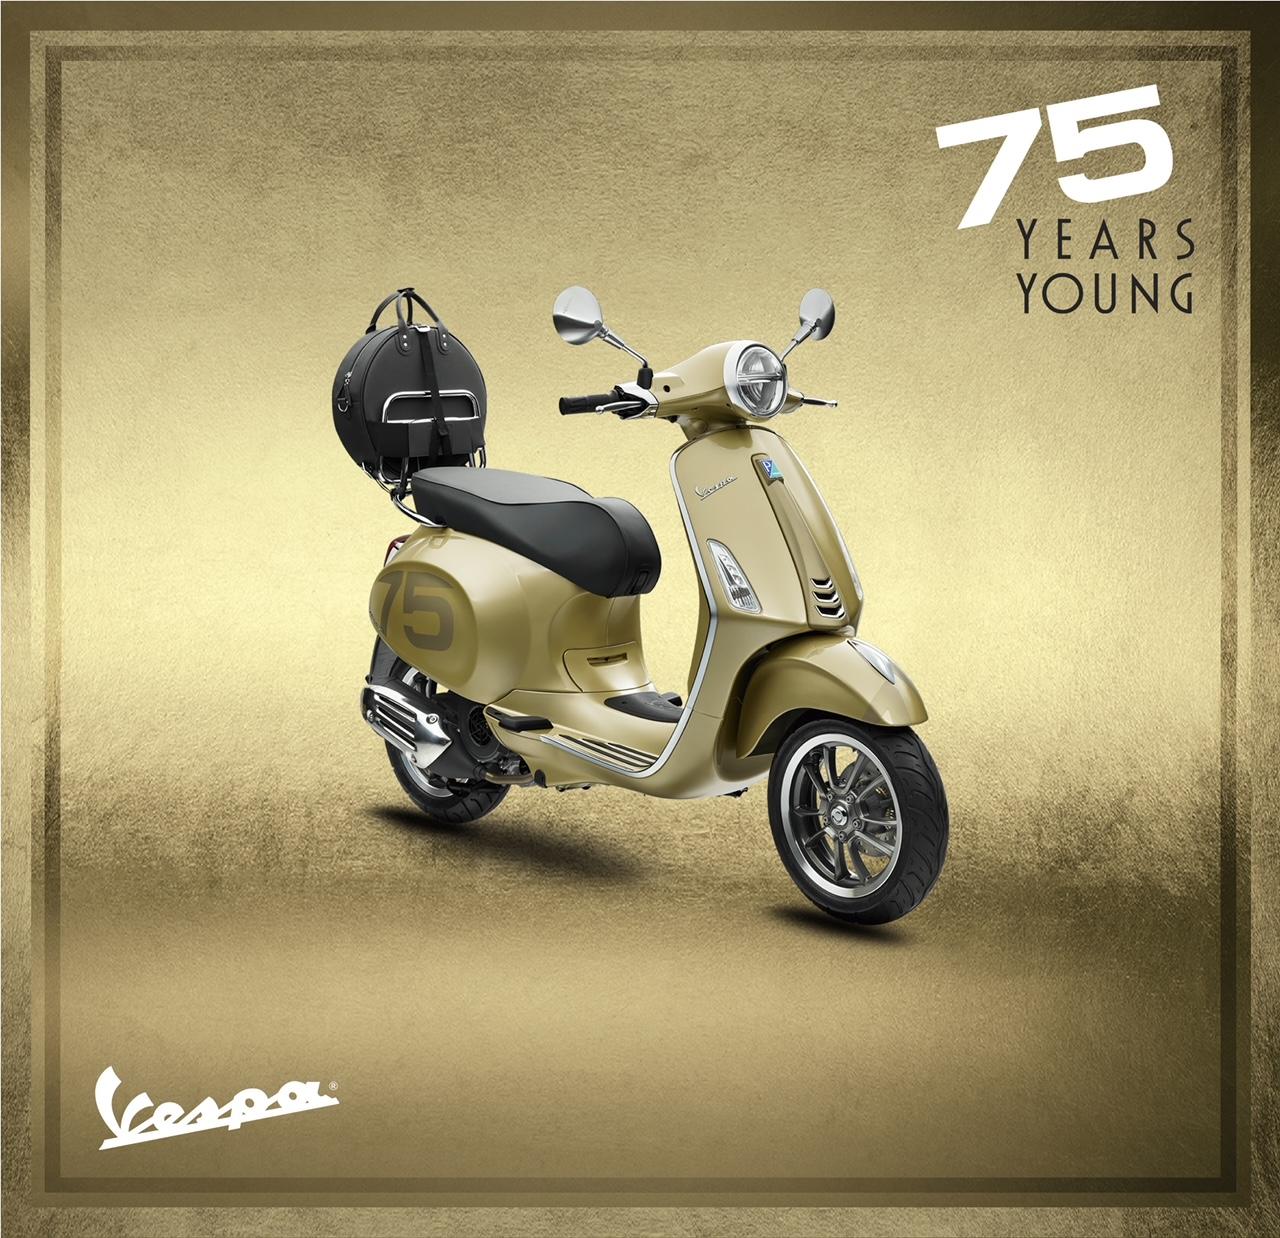 Piagio Việt Nam ra mắt phiên bản đặc biệt kỷ niệm sinh nhật Vespa 75 năm tuổi trẻ ảnh 4